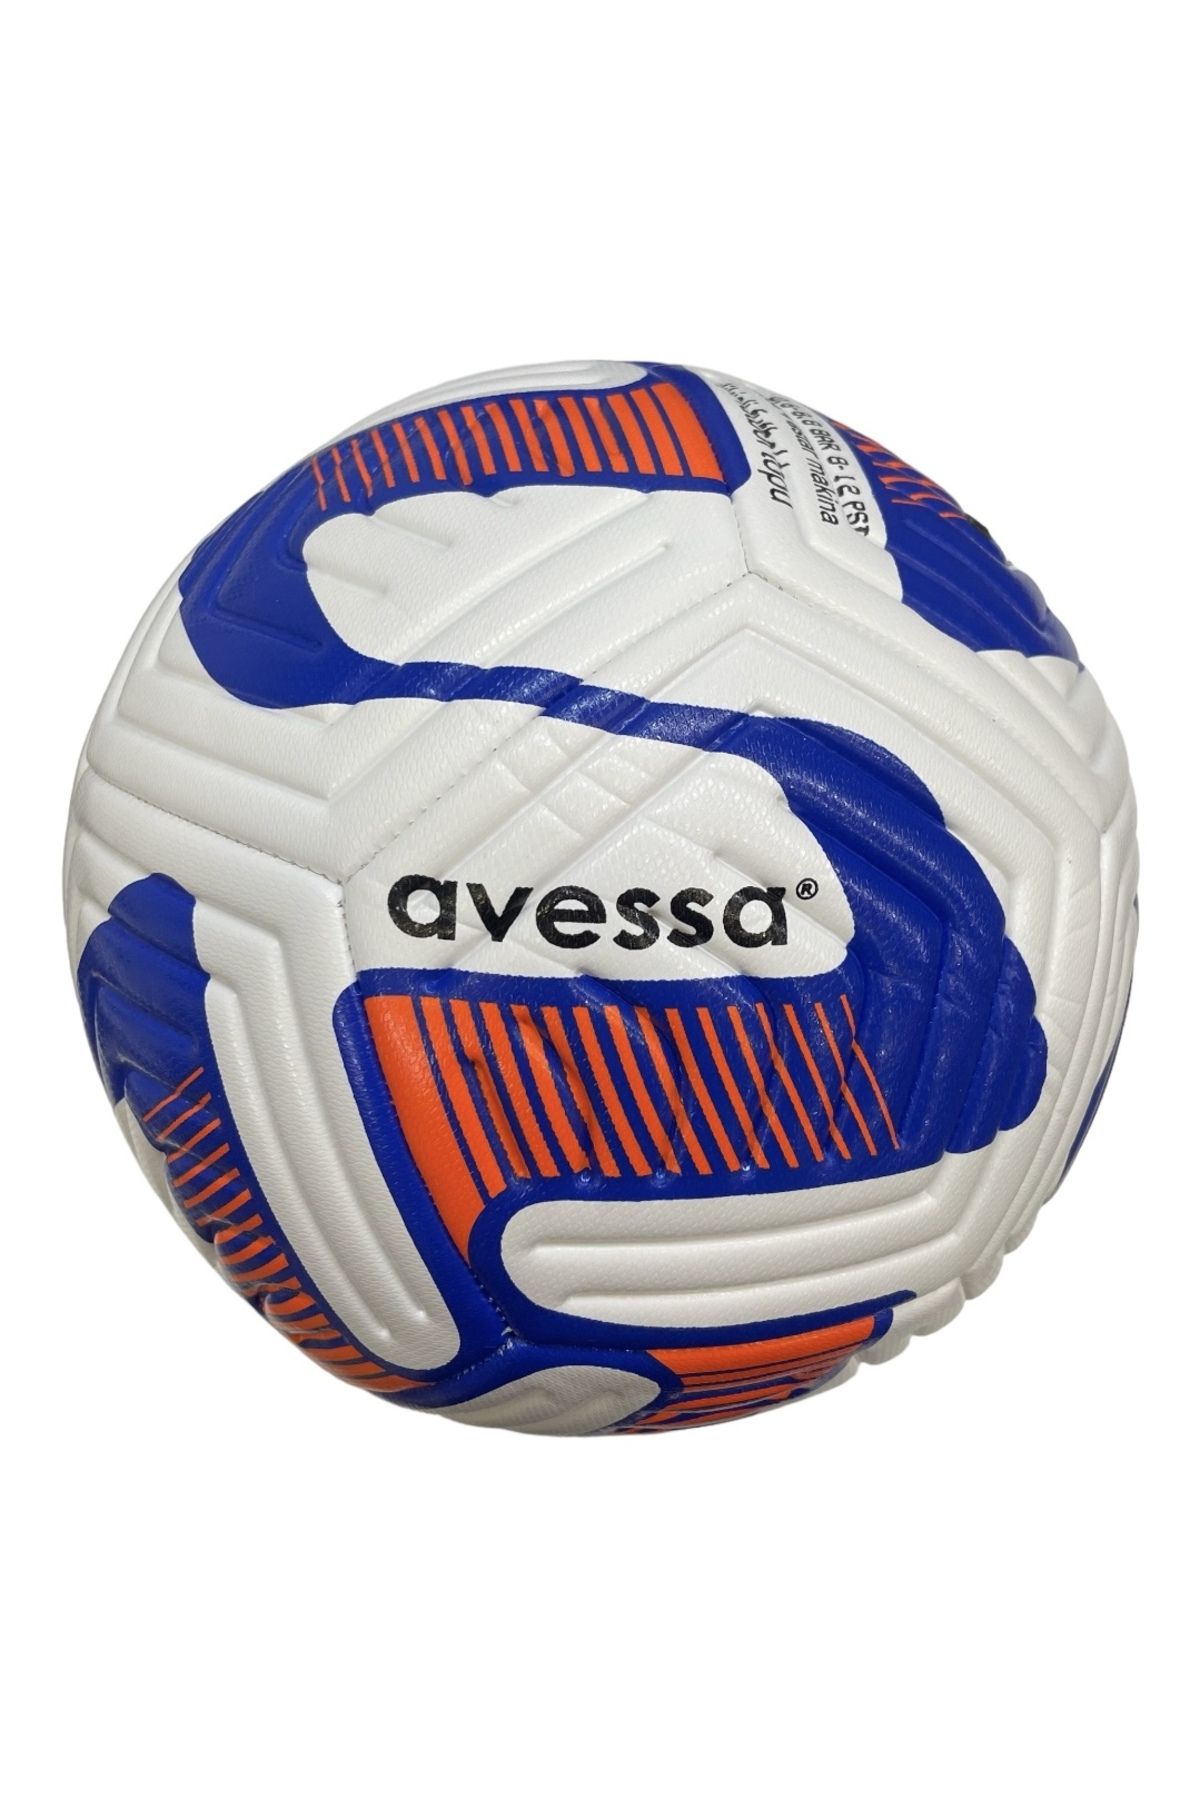 Avessa FT-900 4 Astar 420 Gr No:5 Futbol Maç Topu Orta Sertlikte Halı Saha Maç Topu